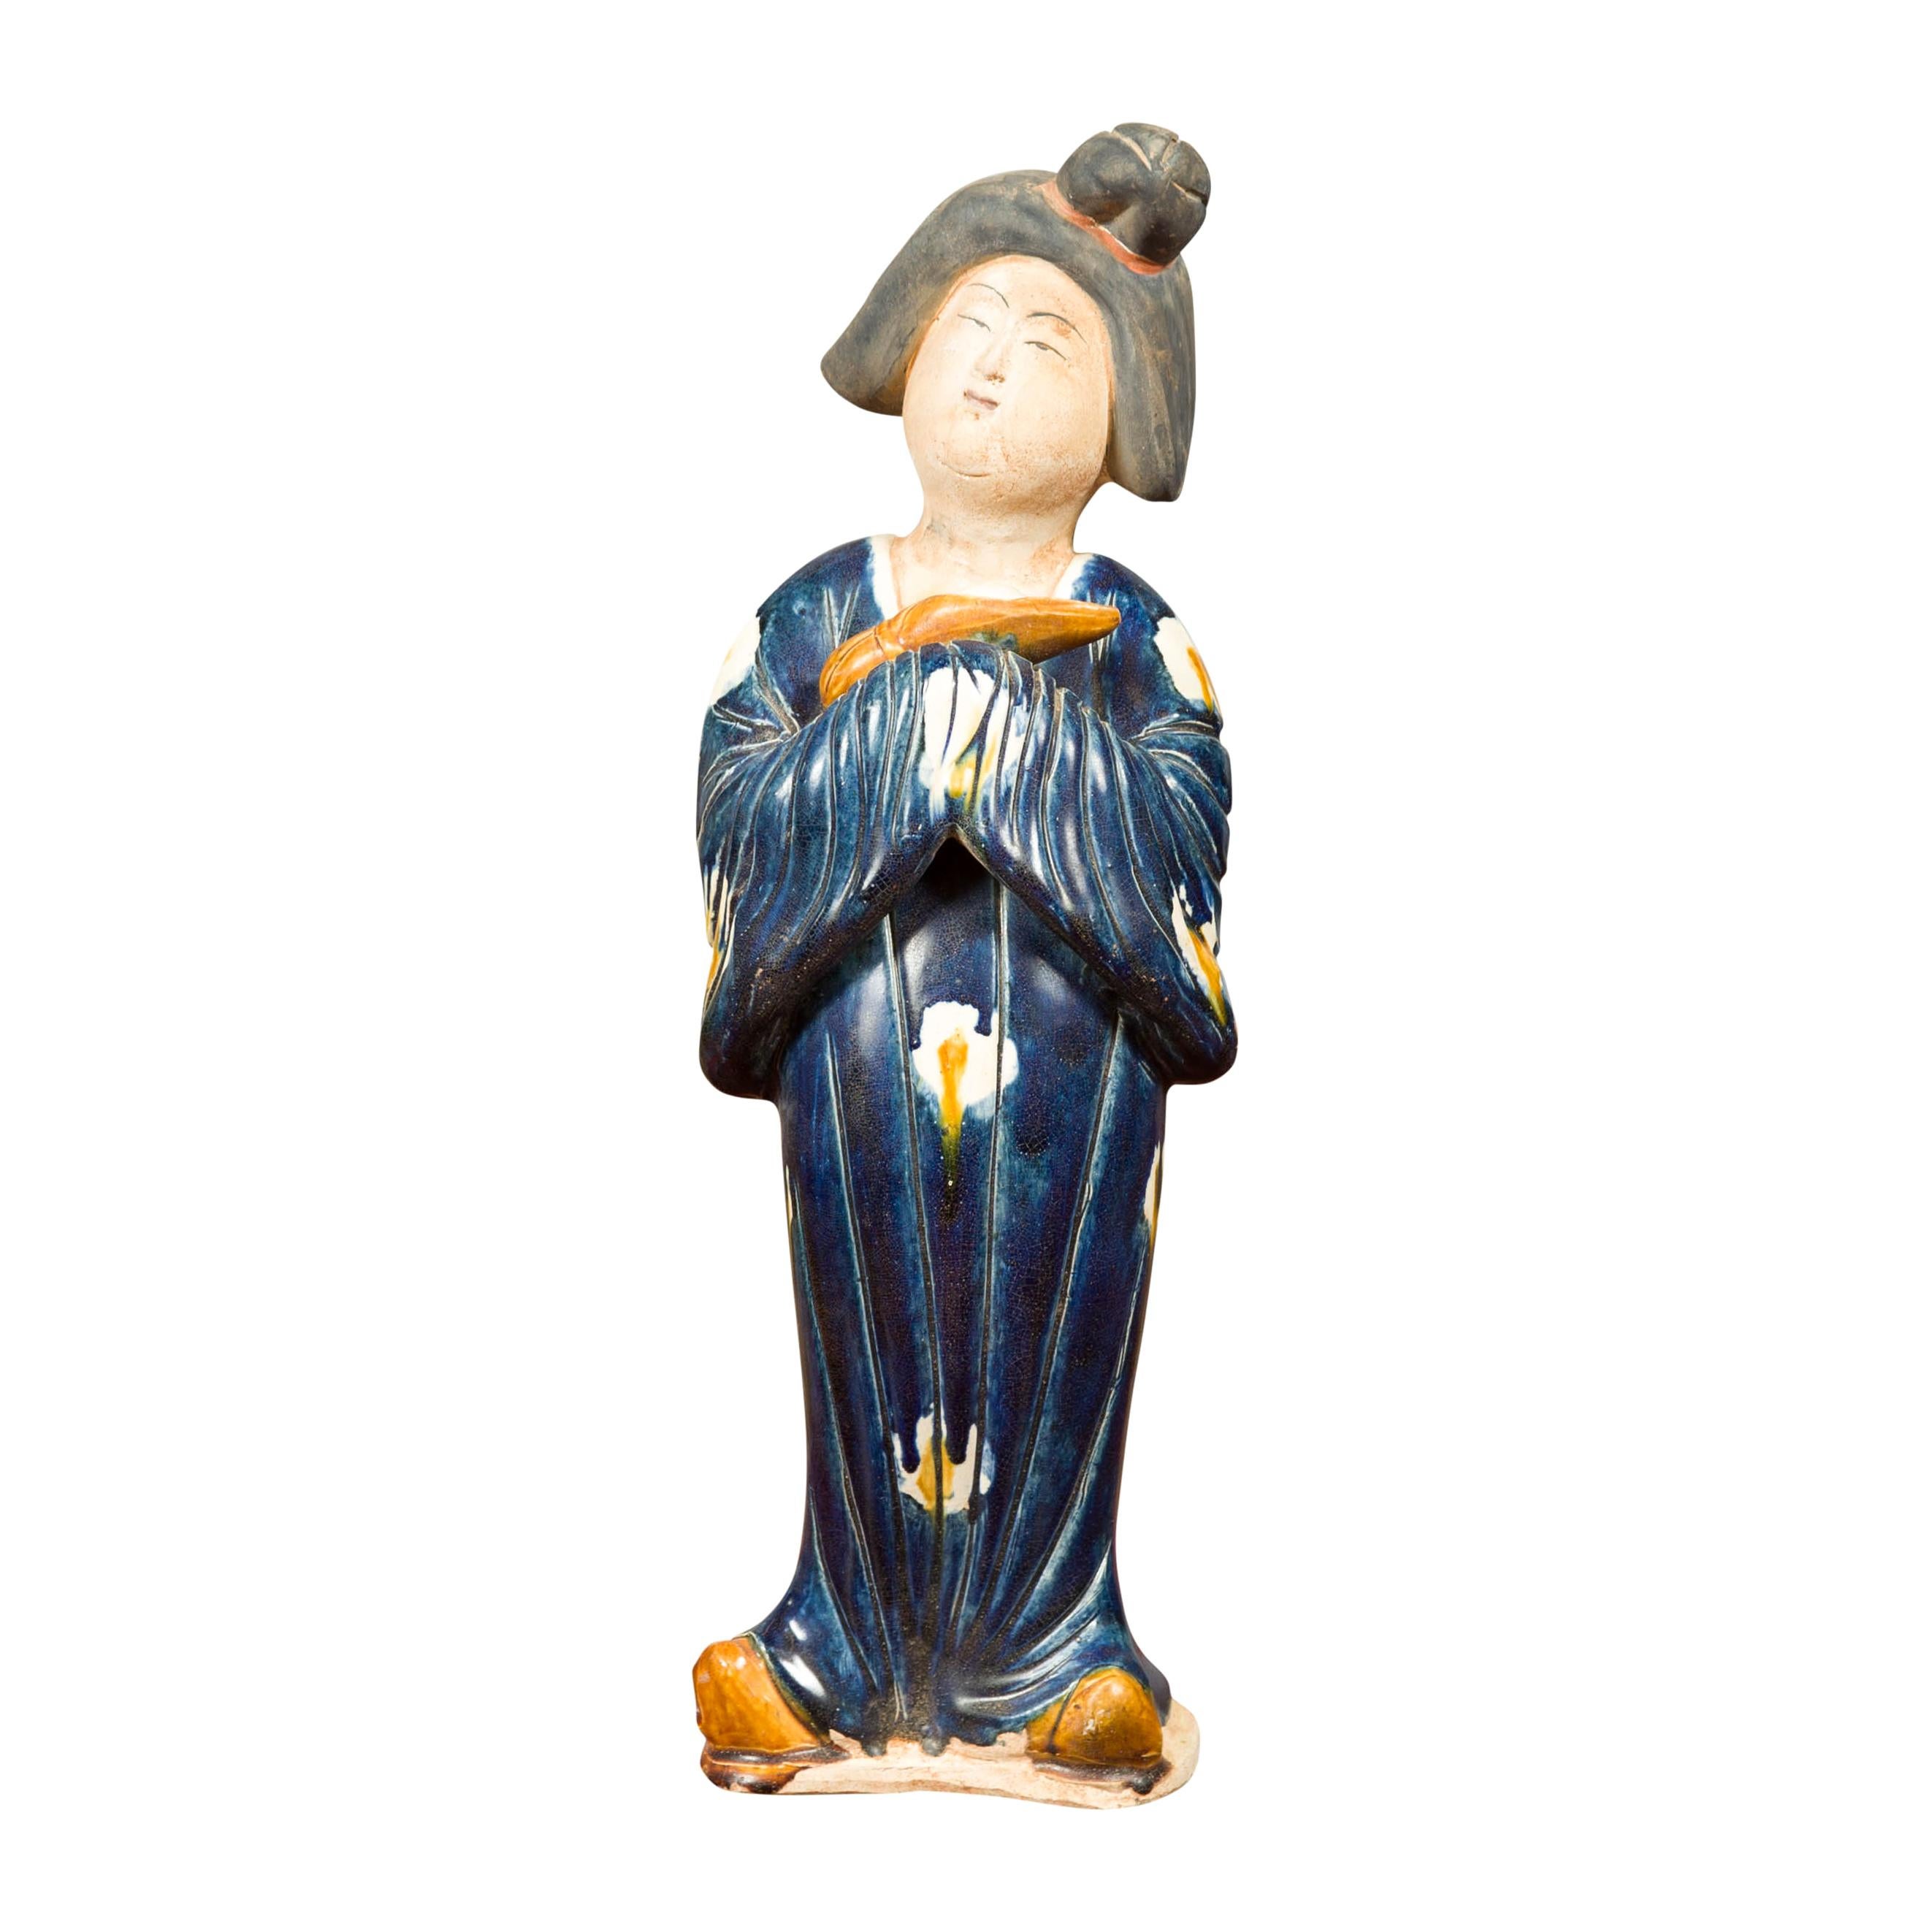 Petite statue chinoise d'une dame de la cour portant un kimono bleu et tenant un bébé